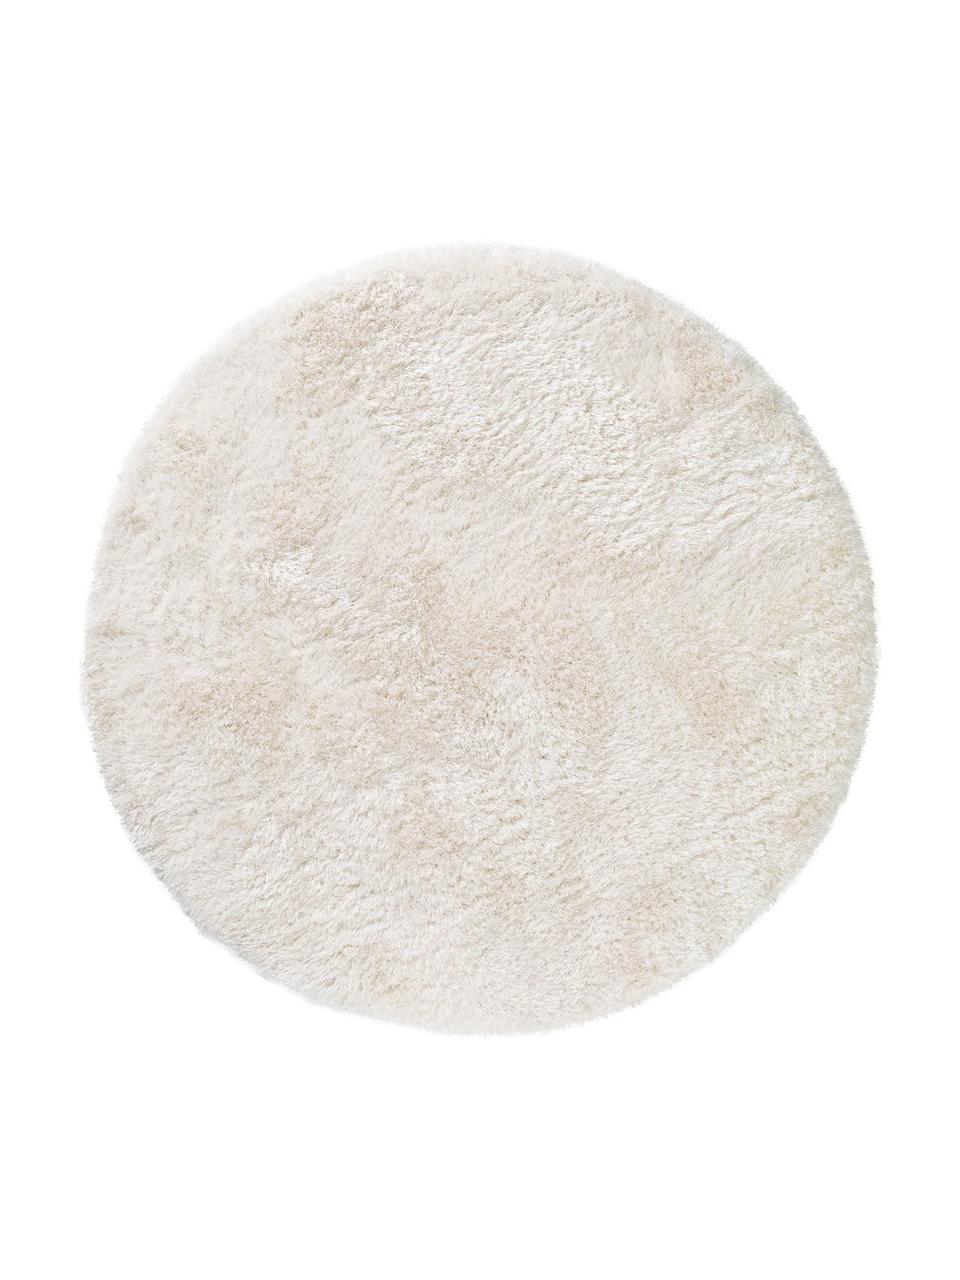 Glänzender Hochflor-Teppich Lea in Weiß, rund, Flor: 50% Polyester, 50% Polypr, Weiß, Ø 200 cm (Größe L)